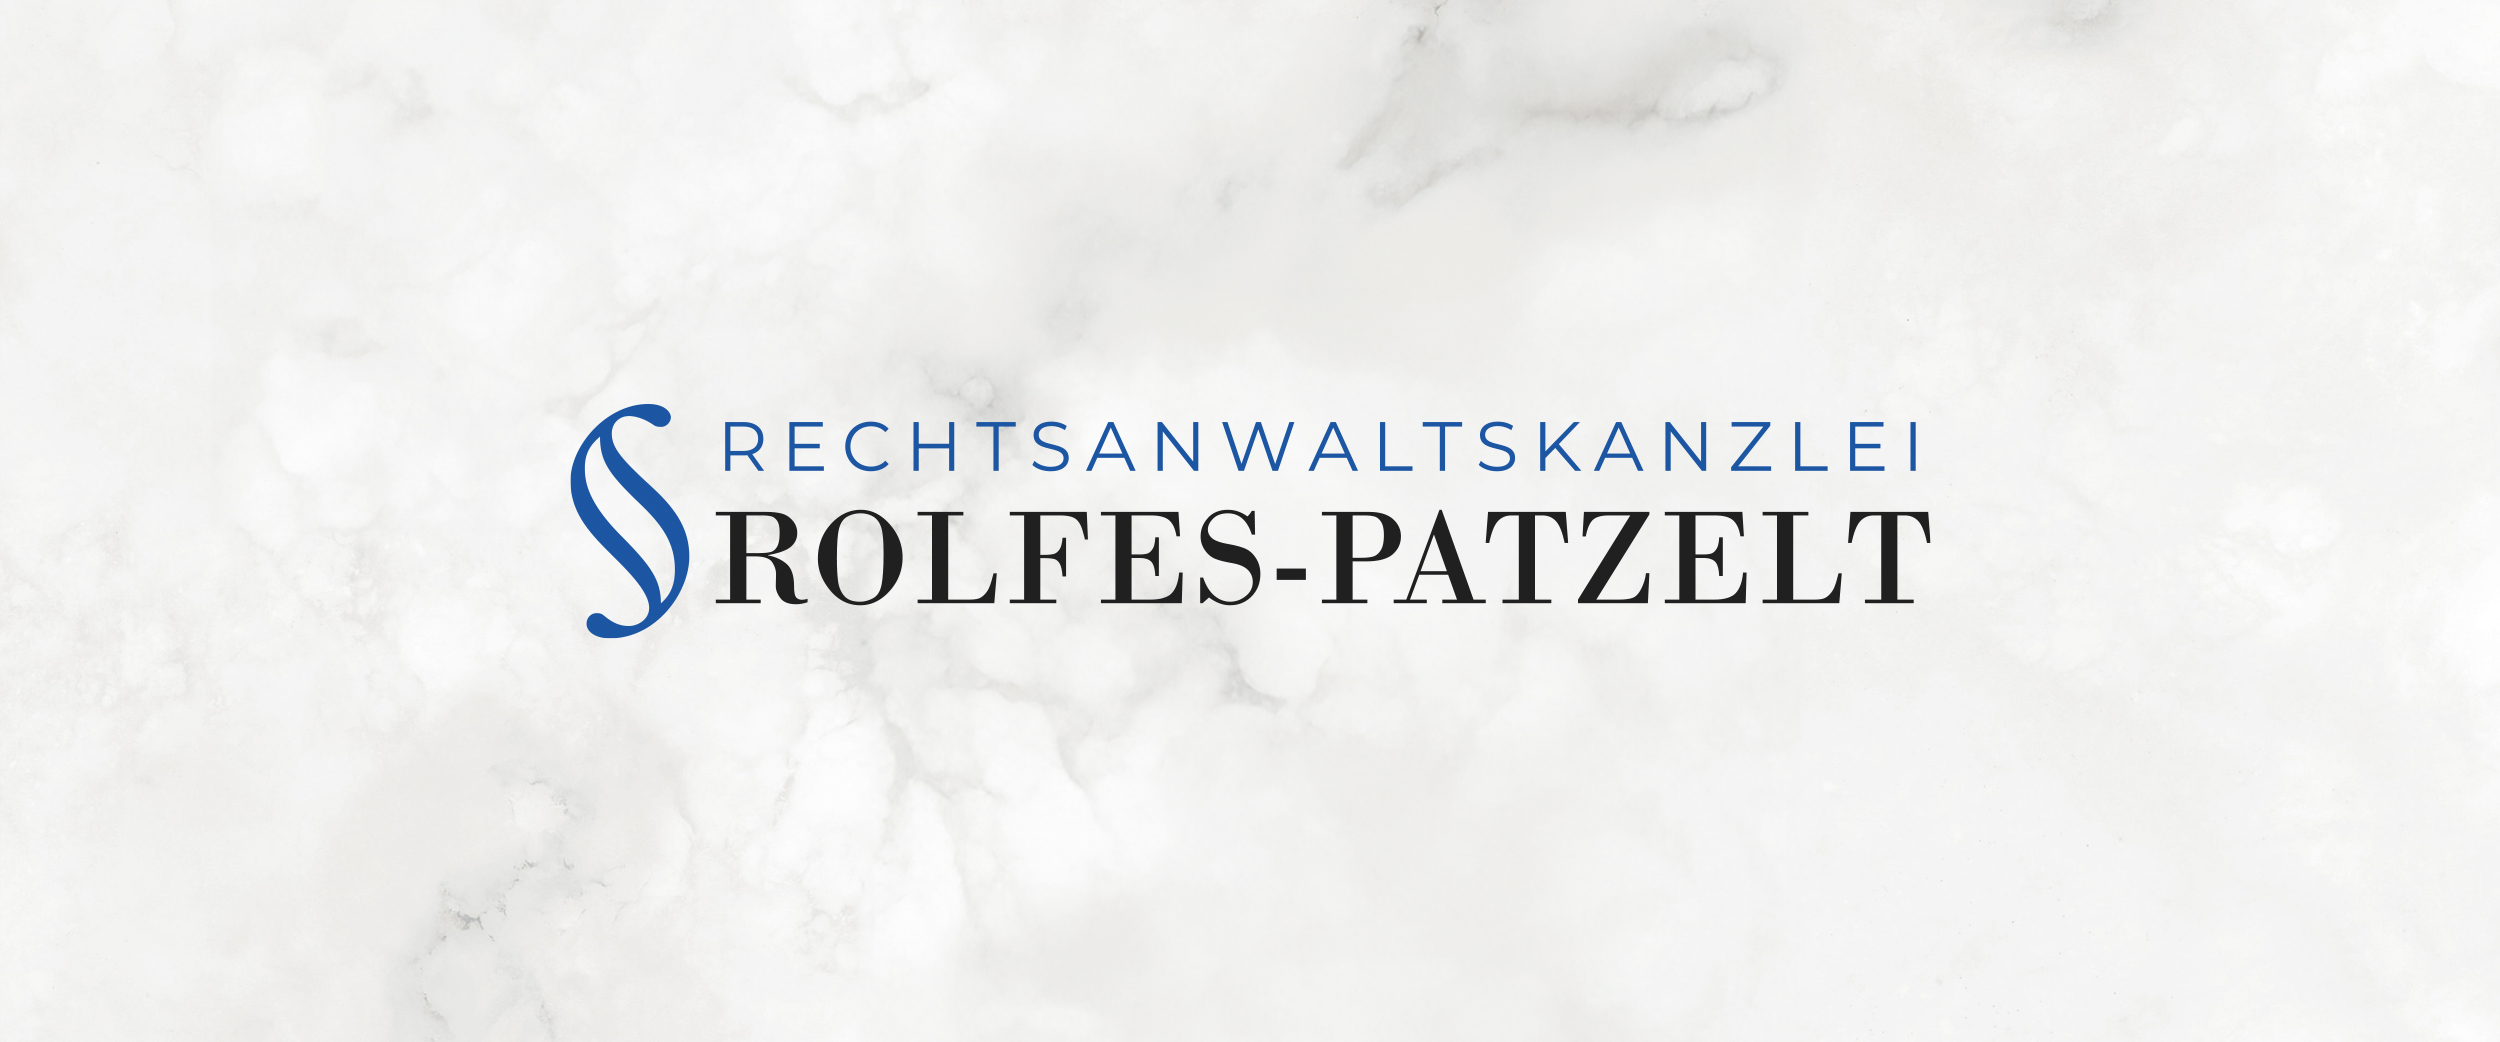 Rechtsanwaltskanzlei Rolfes-Patzelt